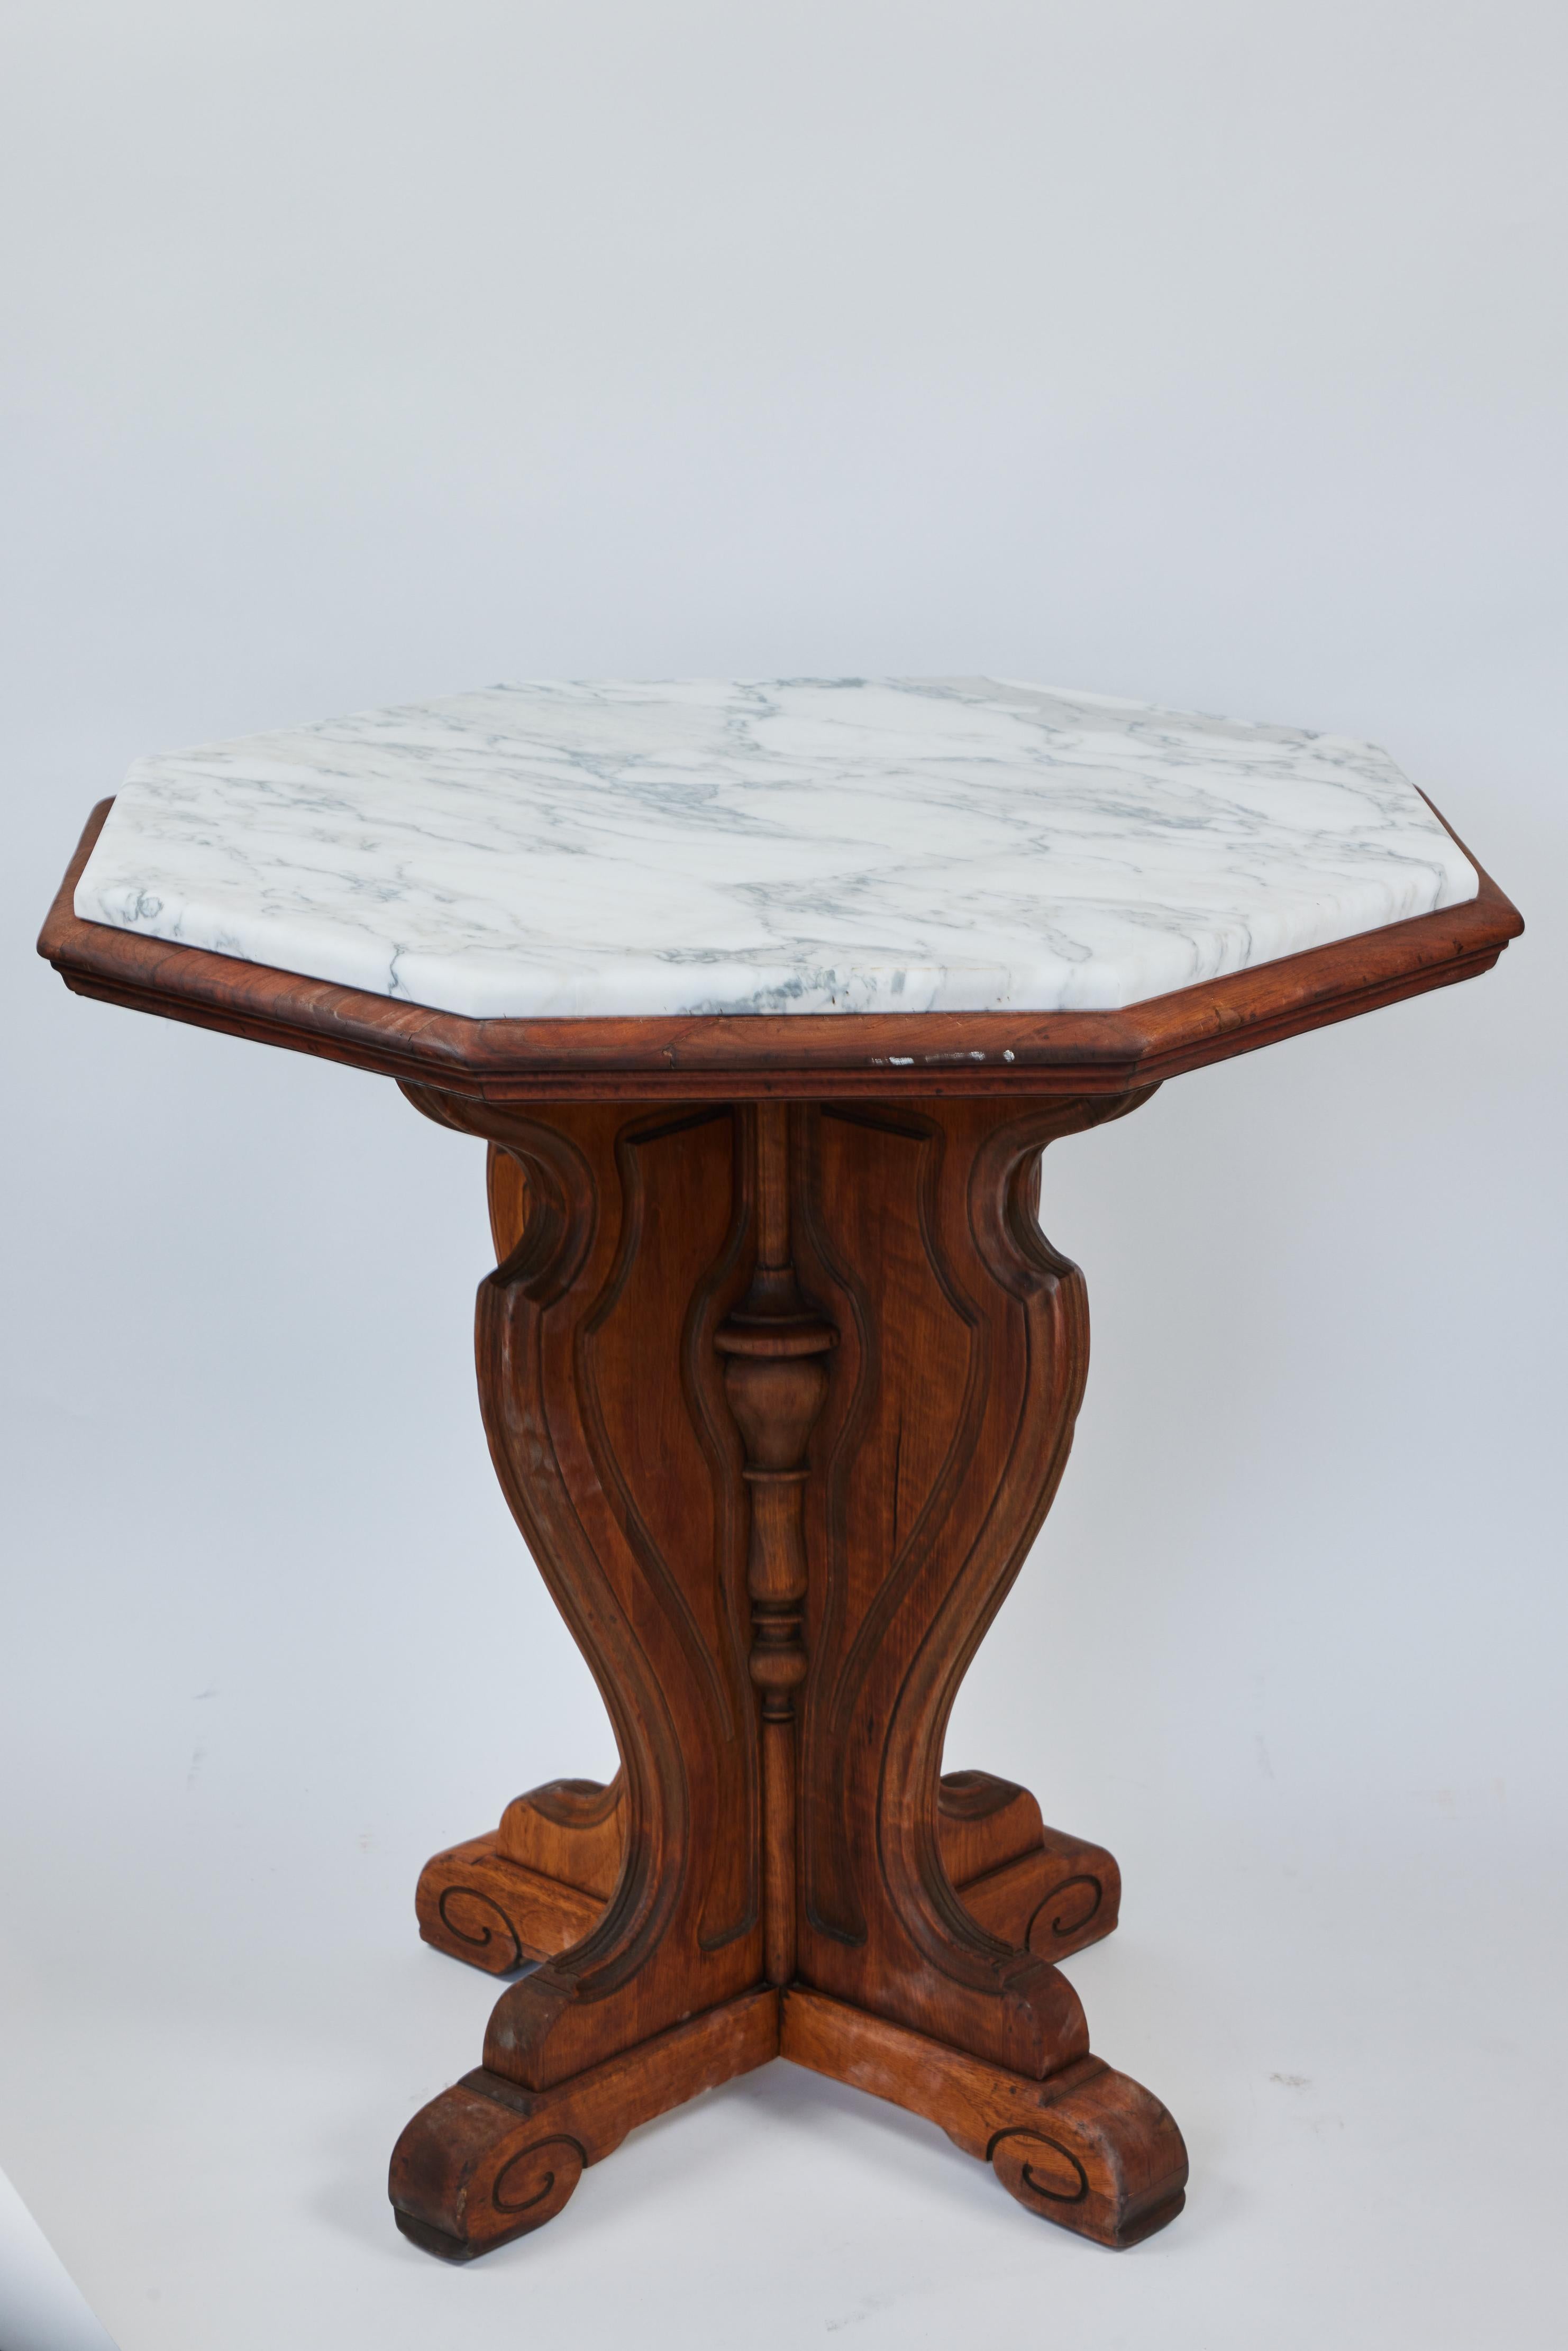 Hand-Carved Vintage Carved Wood Pedestal Table w/ New